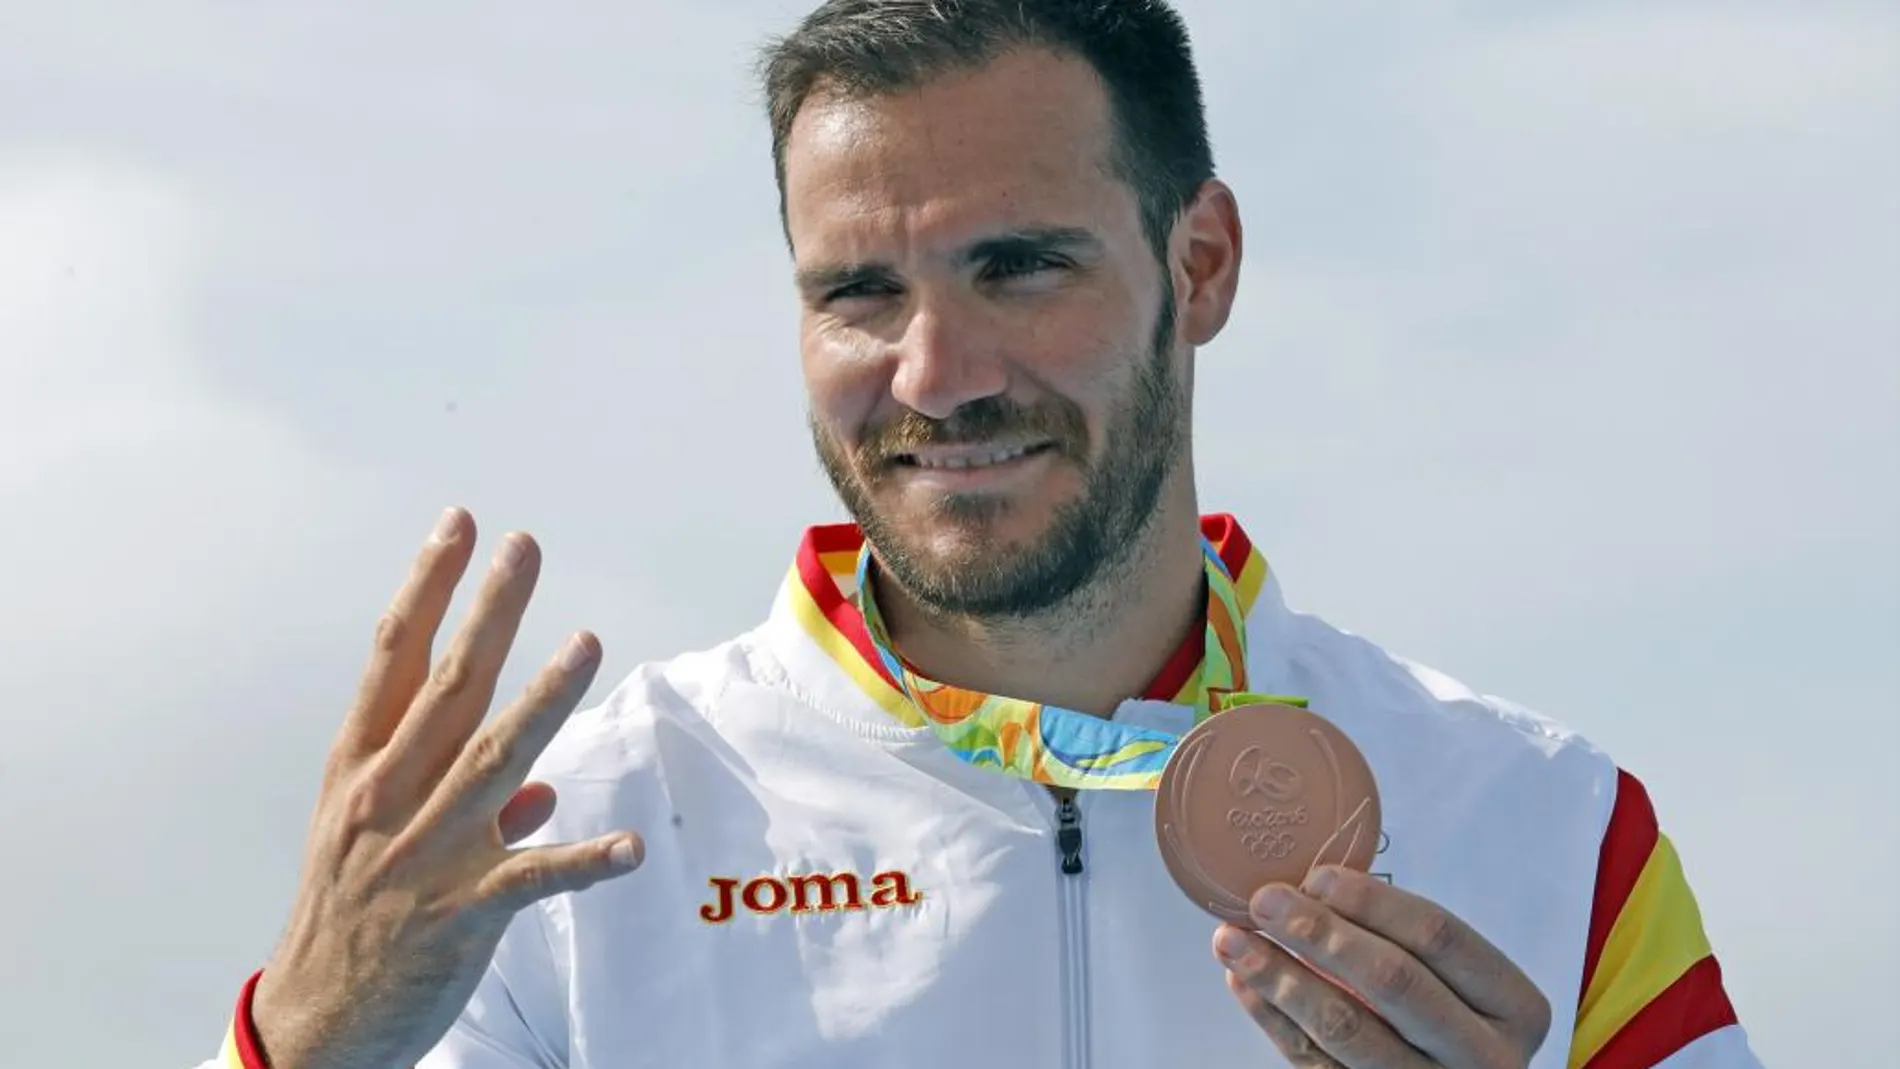 El español Saúl Craviotto indica el número de medallas olímpicas conseguidas a lo largo de su carrera